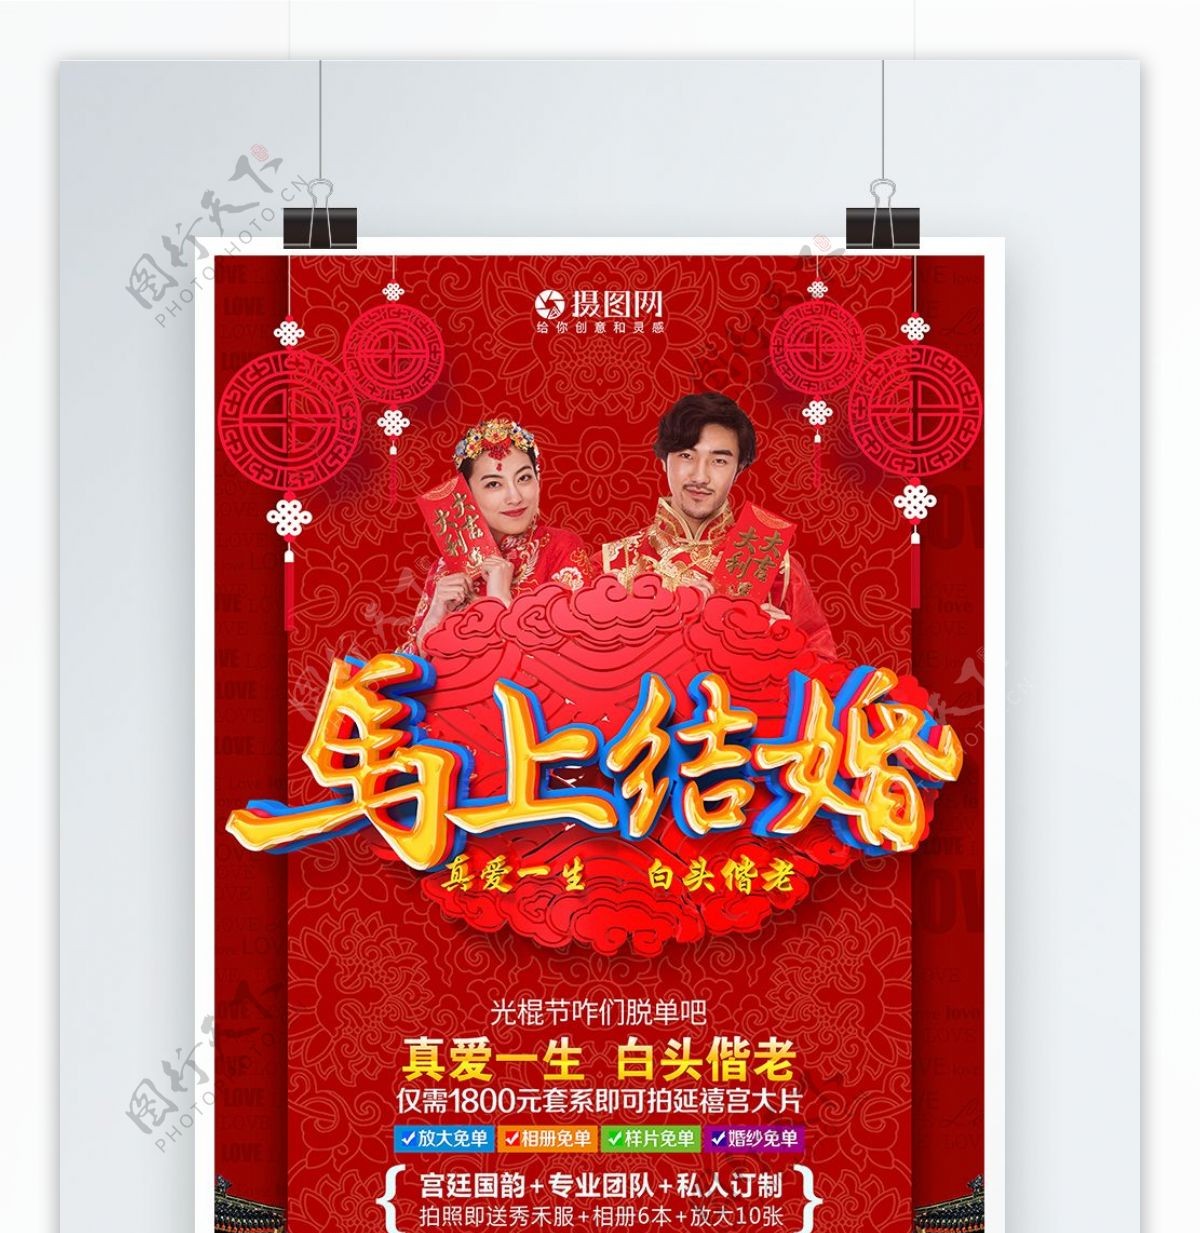 马上结婚中国红喜庆婚纱摄影海报